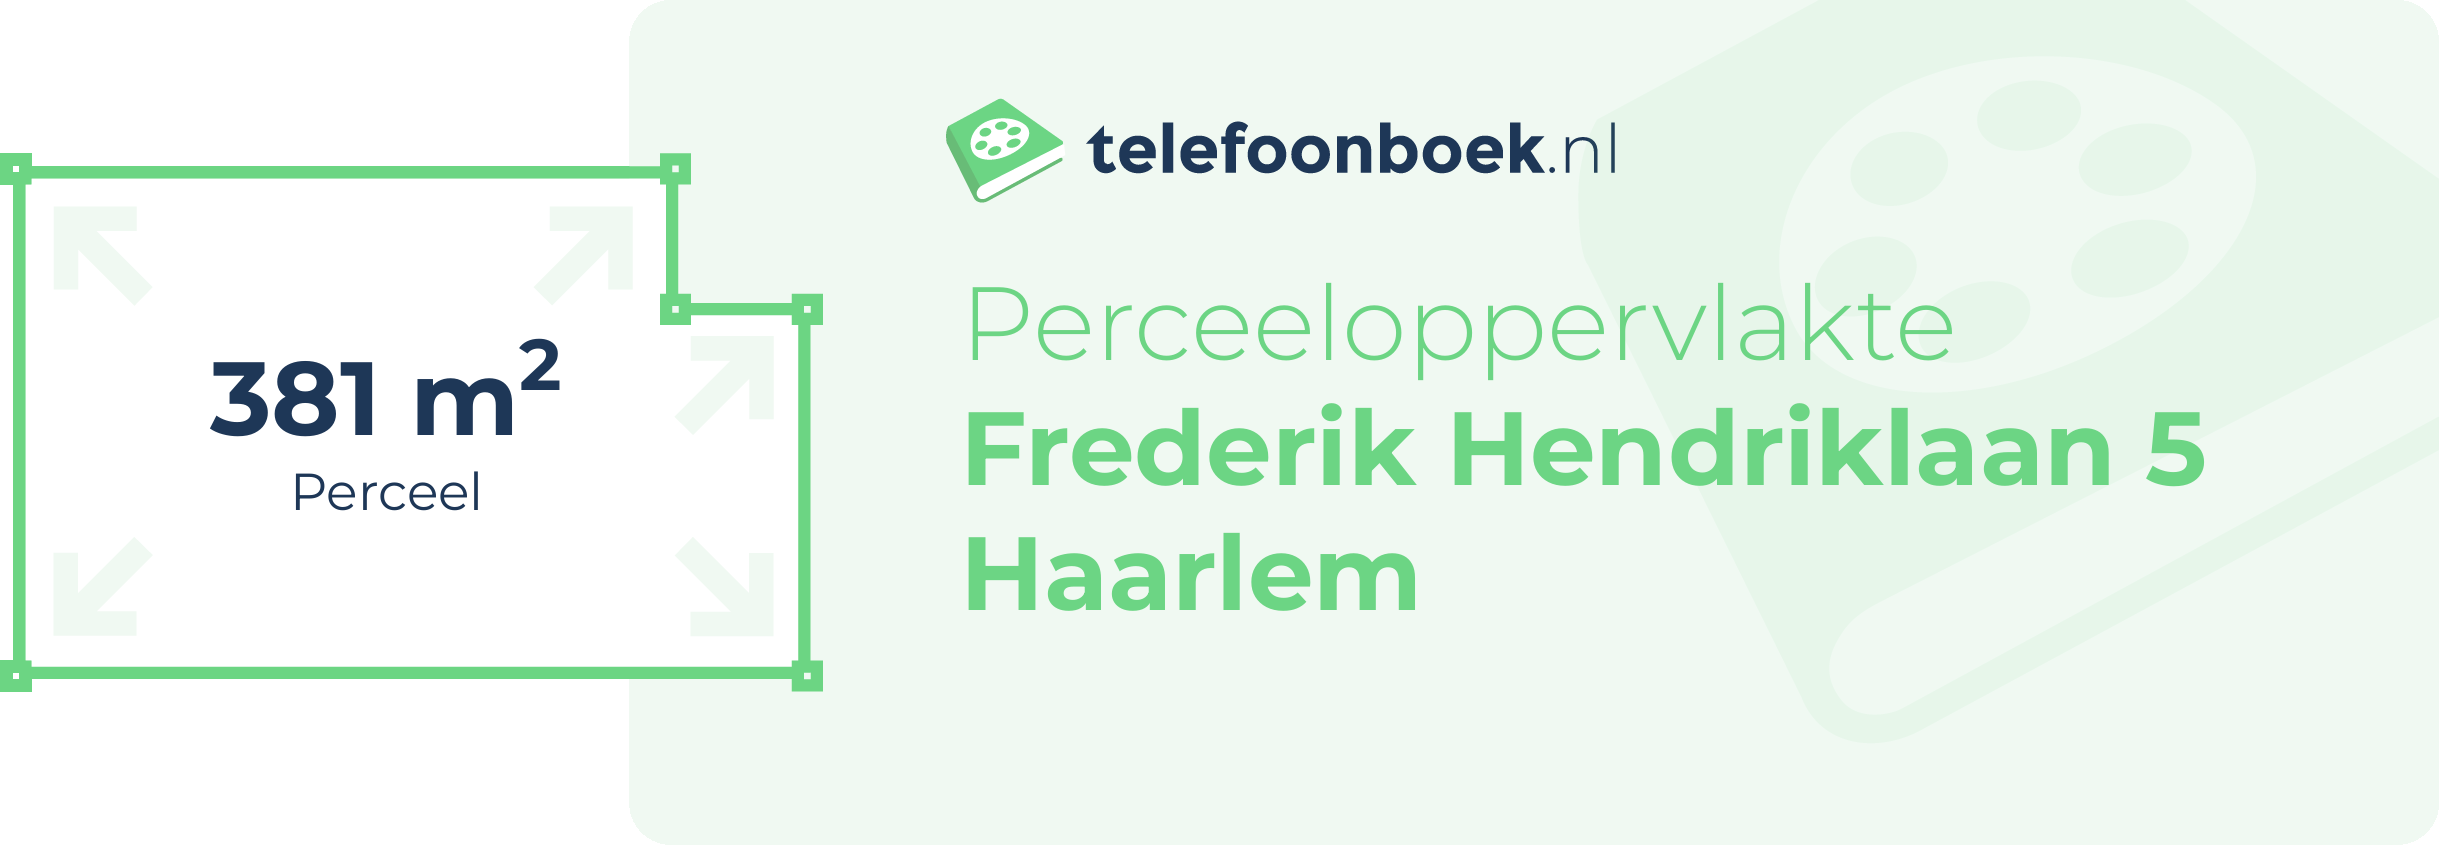 Perceeloppervlakte Frederik Hendriklaan 5 Haarlem